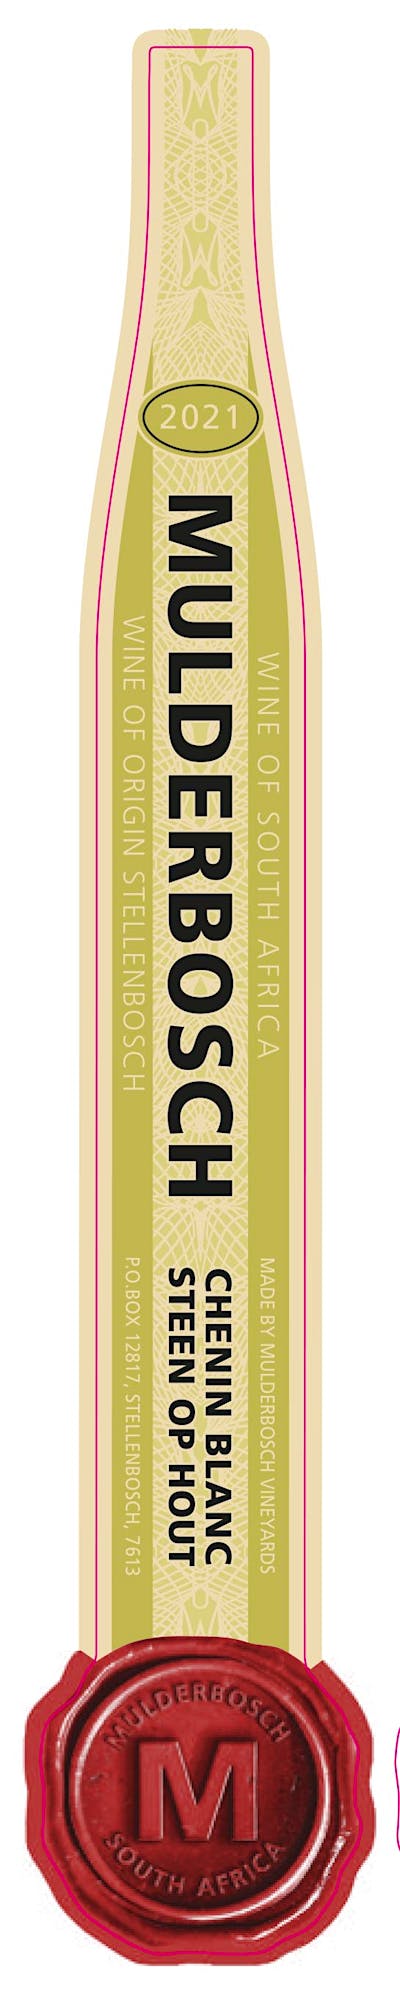 Label for Mulderbosch